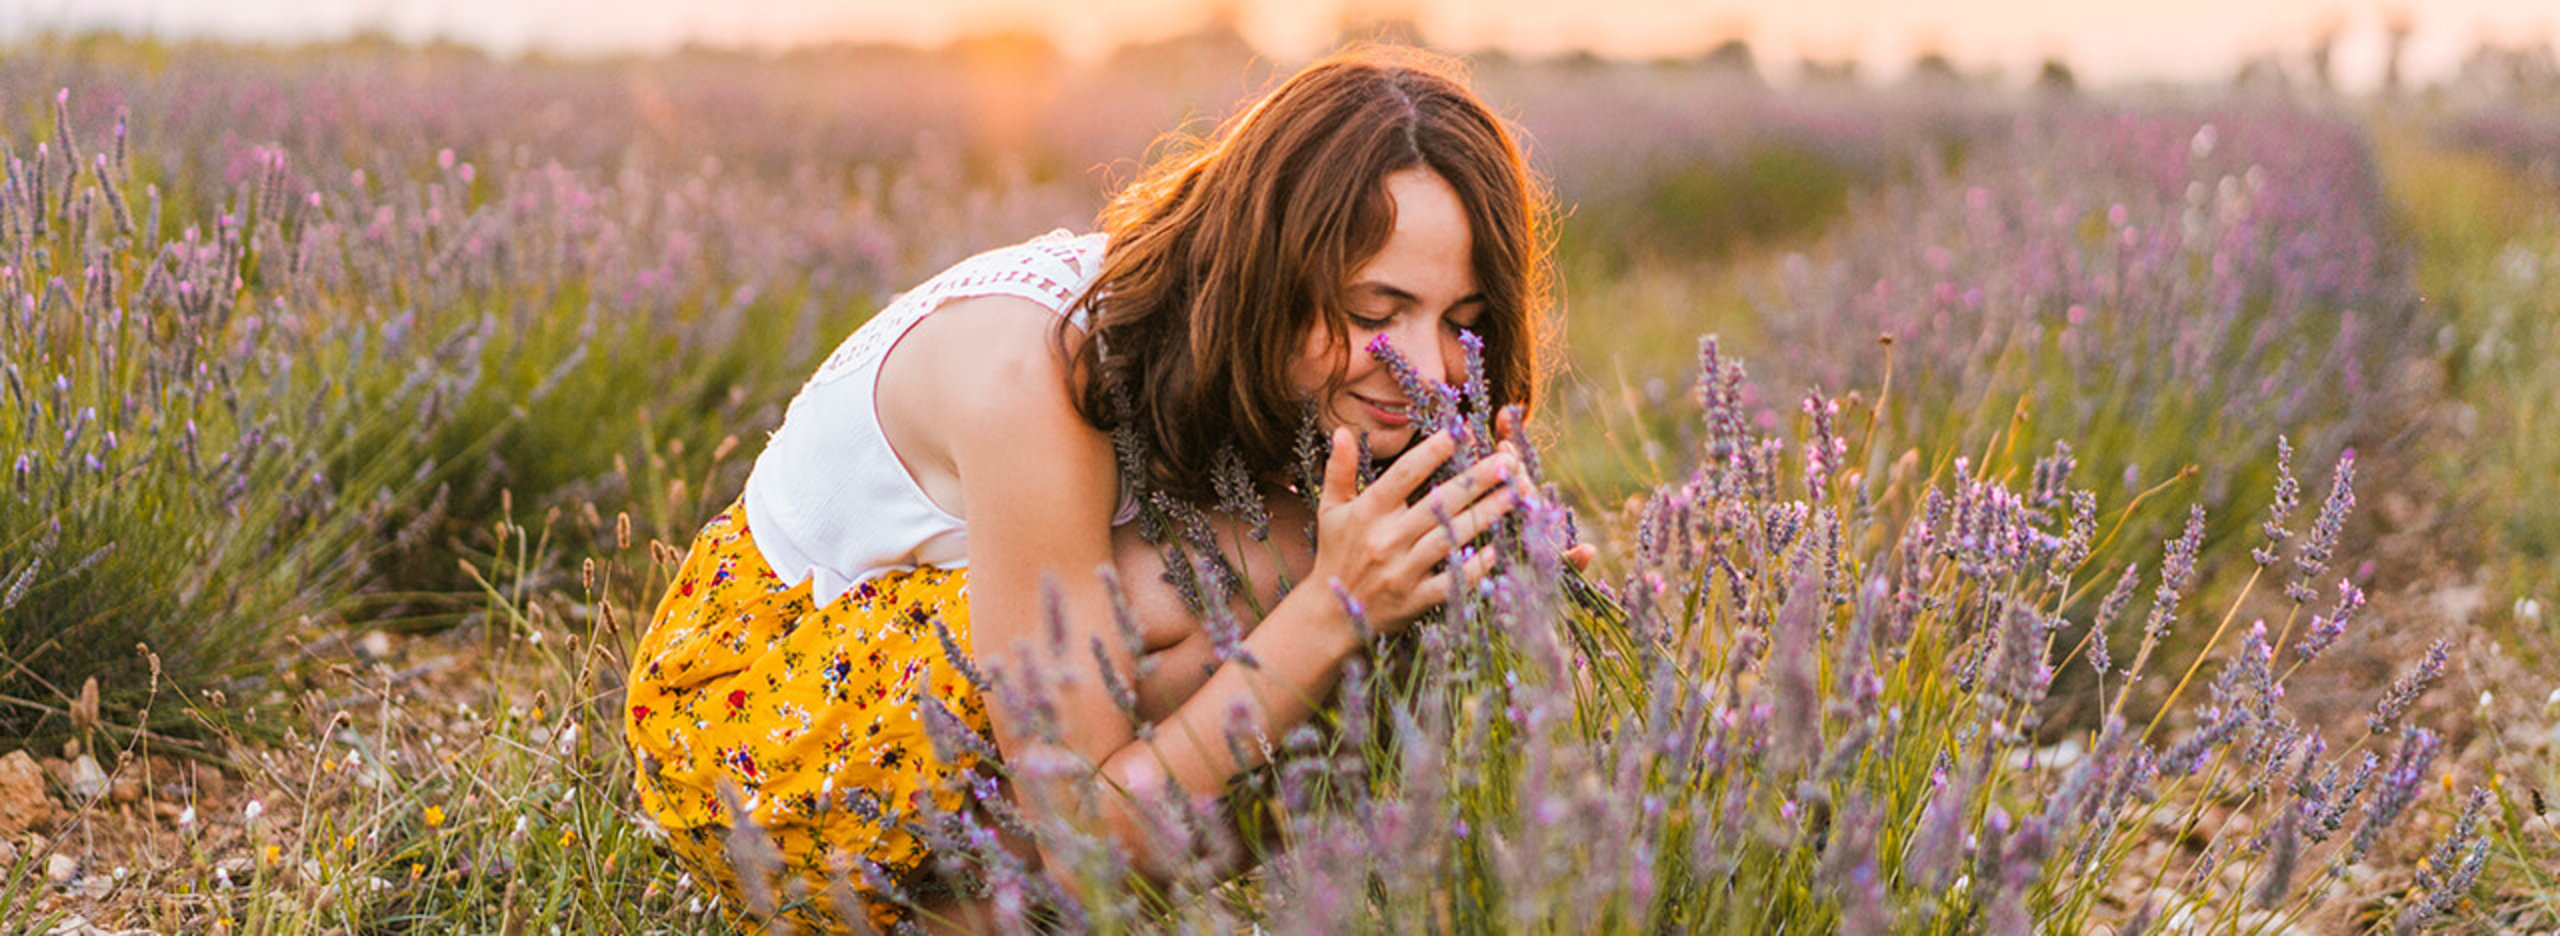 Frau riecht auf Feld am Lavendel